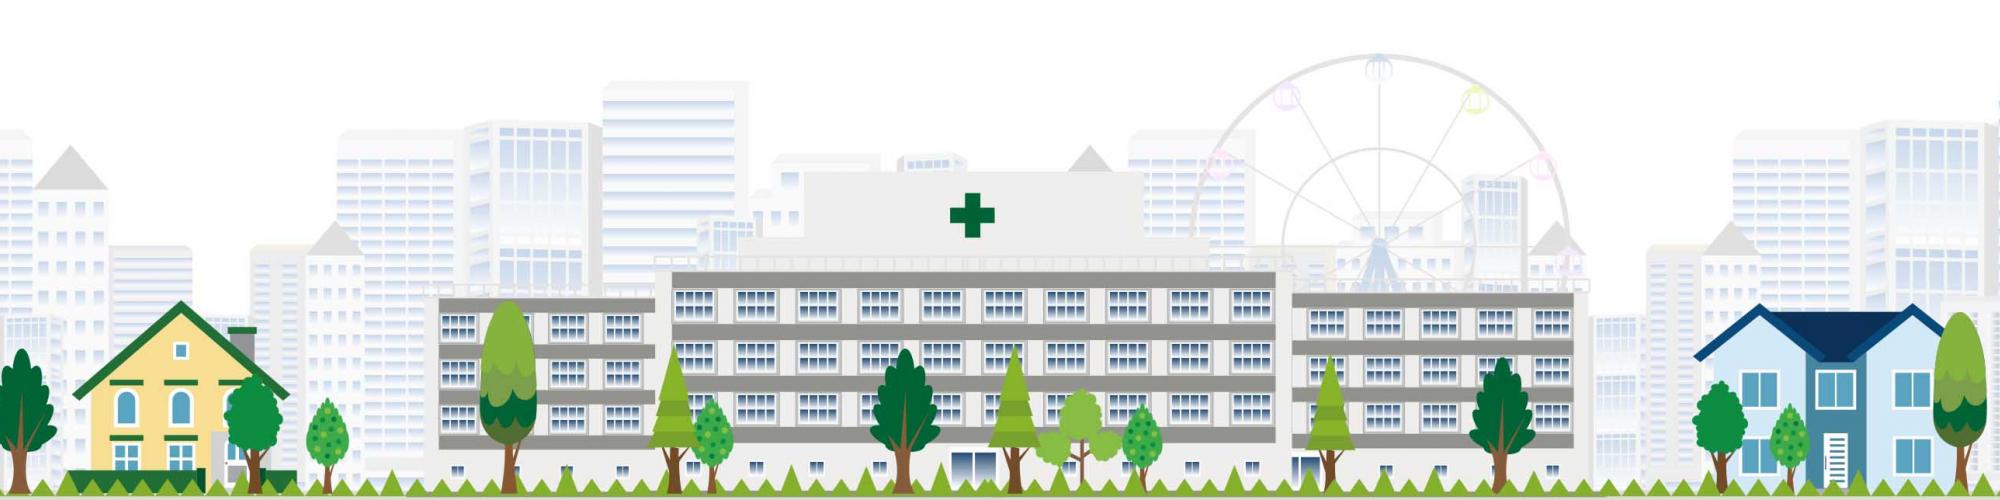 Gesundheitszentrum RECURA GmbH - MVZ Grünau